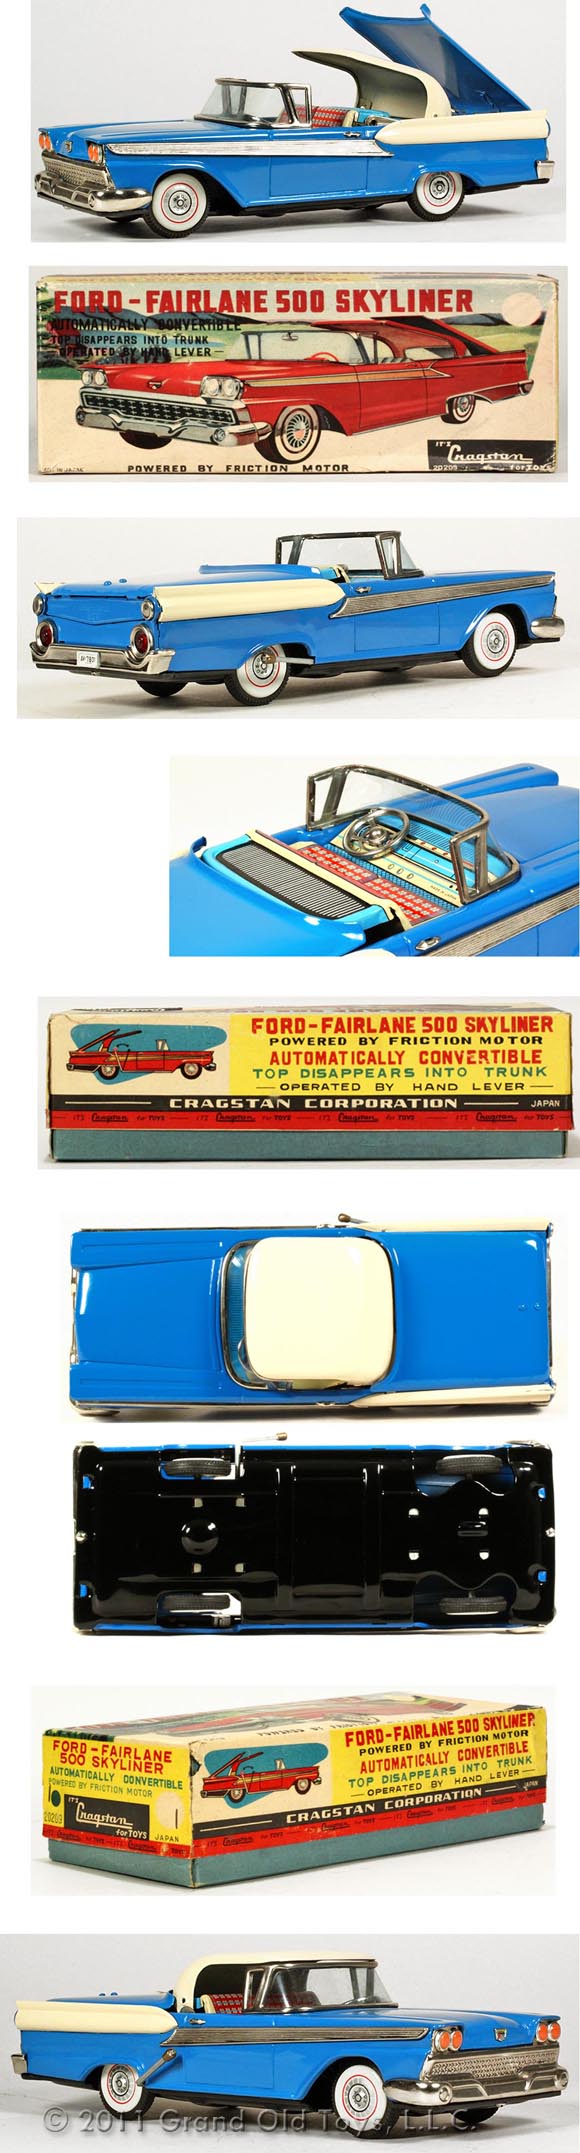 1959 Yachio Ford Fairlane 500 Skyliner In Original Box